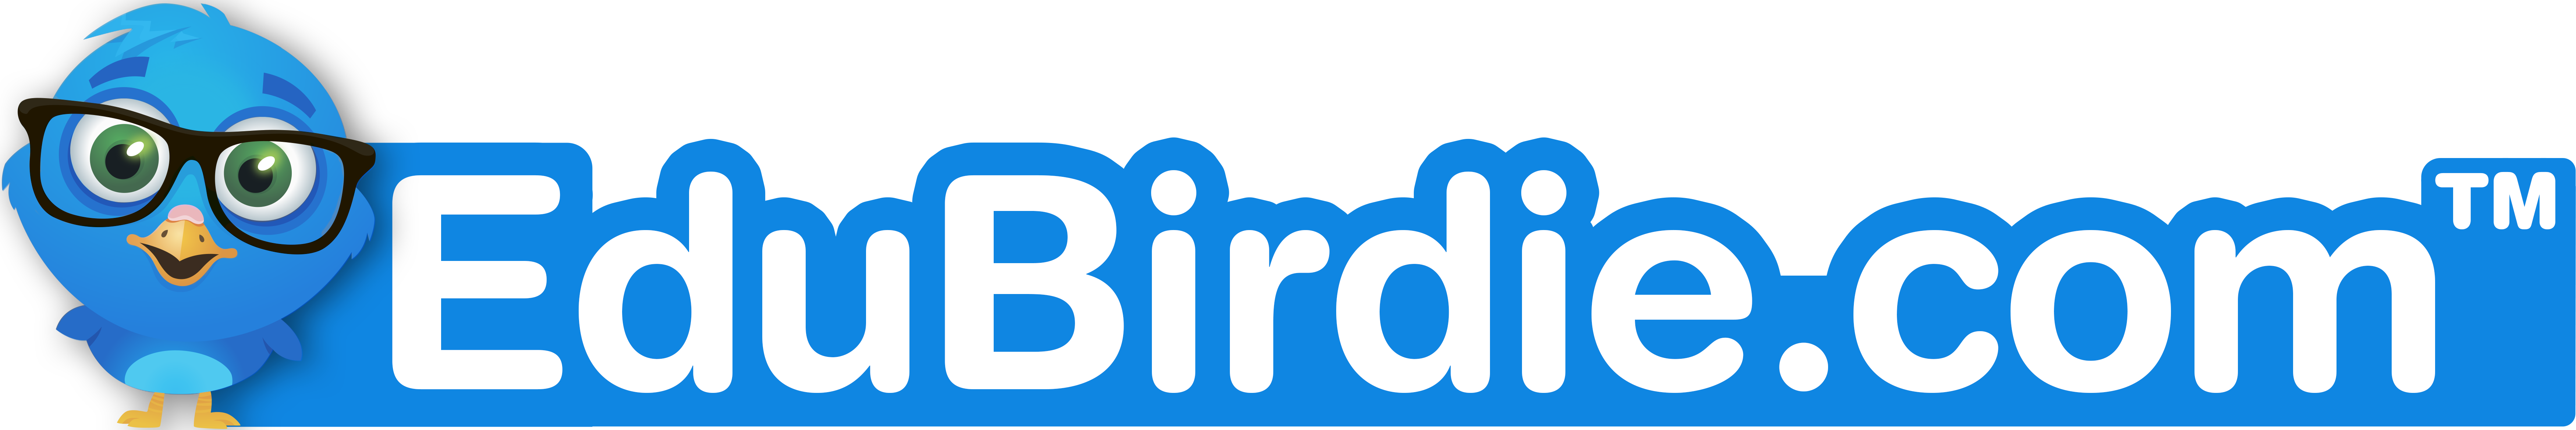 edu birdie paraphrasing tool